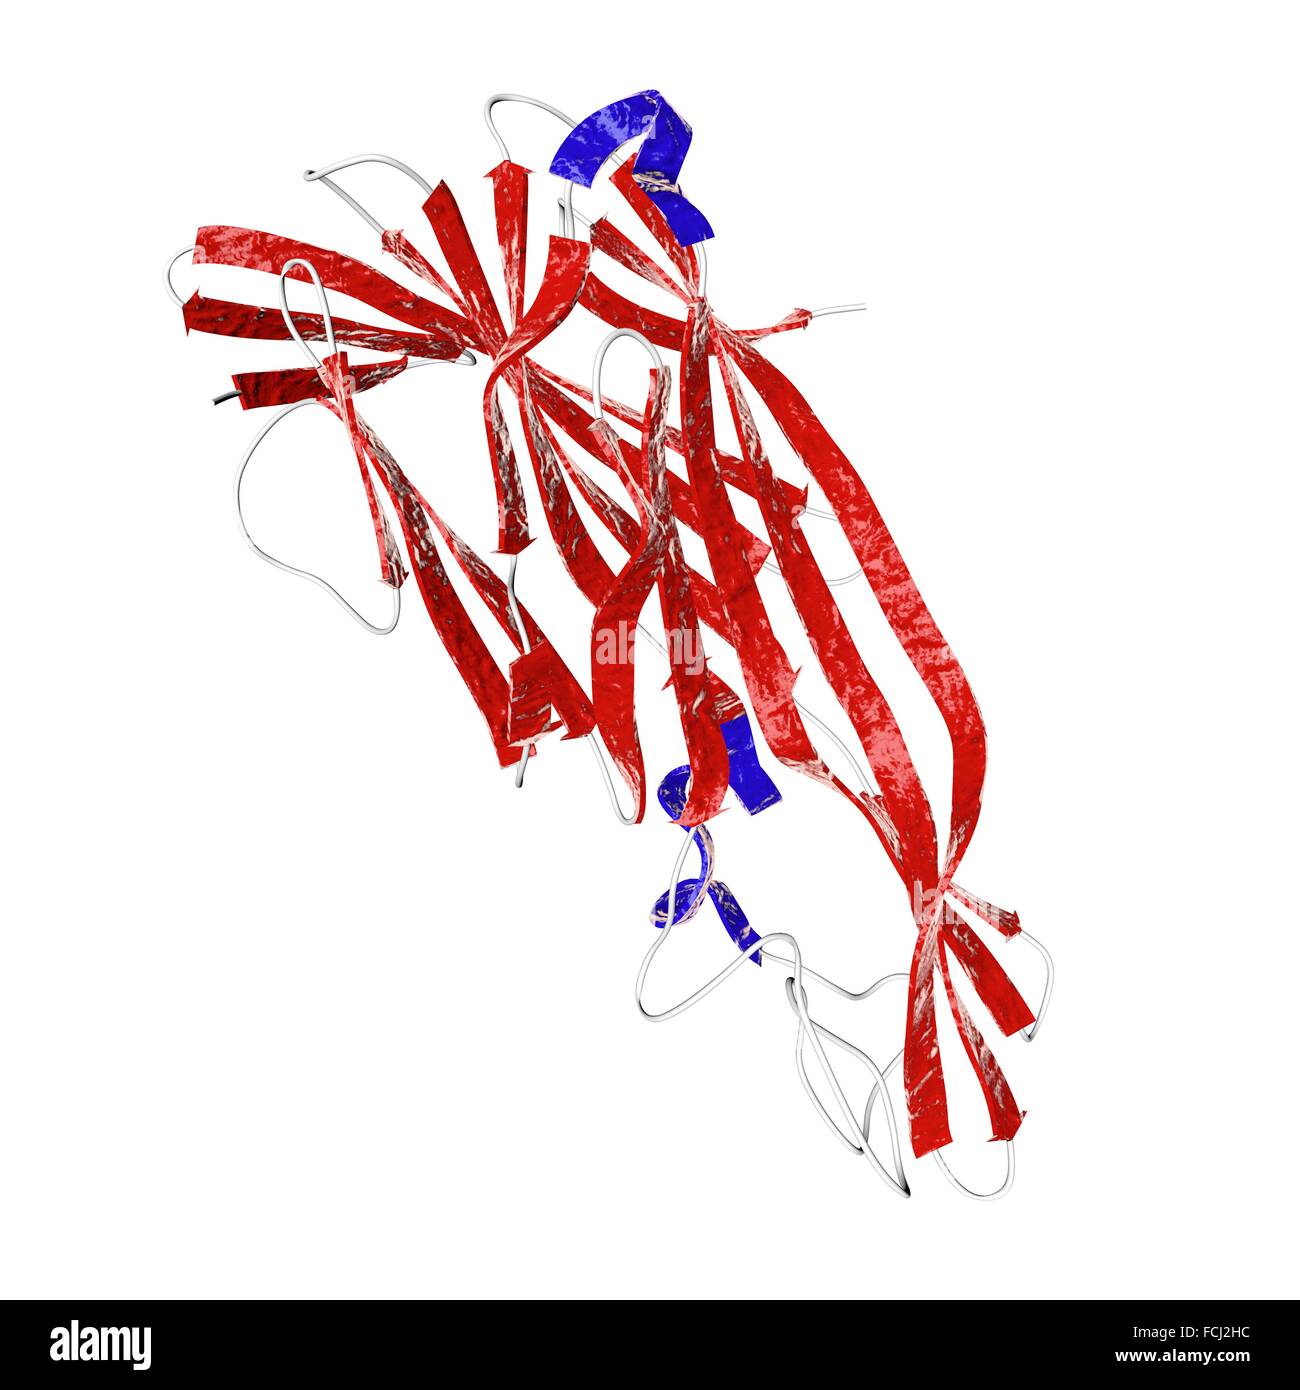 Molekulare Struktur der Delta Toxin produziert durch Bakterium Clostridium Perfringens die Vogelgrippe nekrotische Enteritis, anaerobe Wundinfektionen, Gasbrand und Lebensmittelvergiftung verursacht. Stockfoto